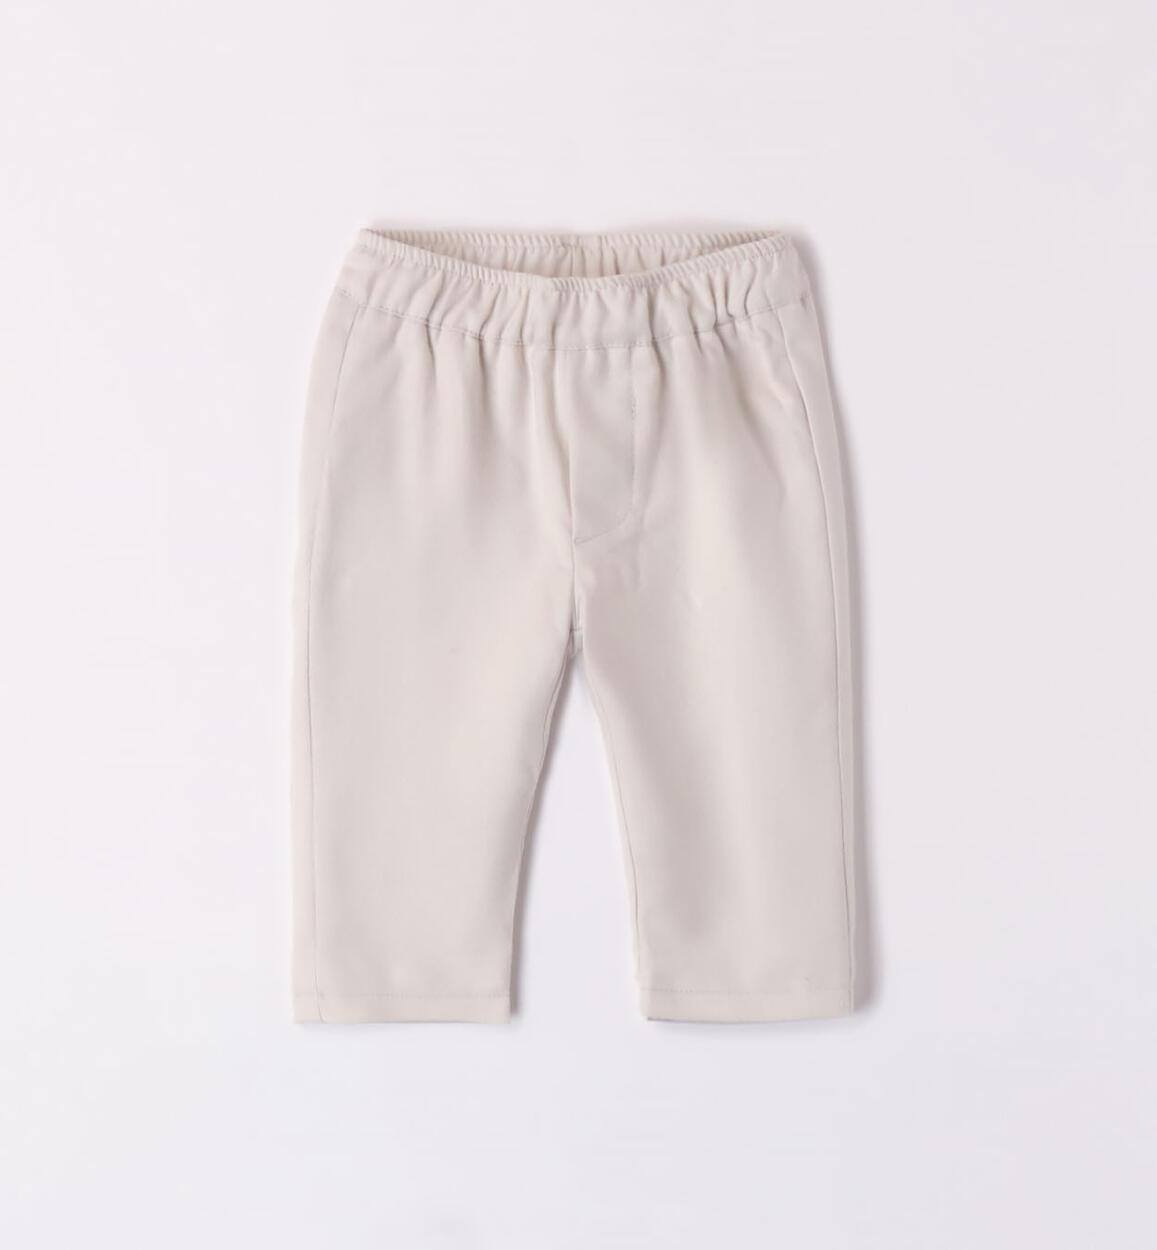 Pantaloni bimbo GRIGIO Minibanda